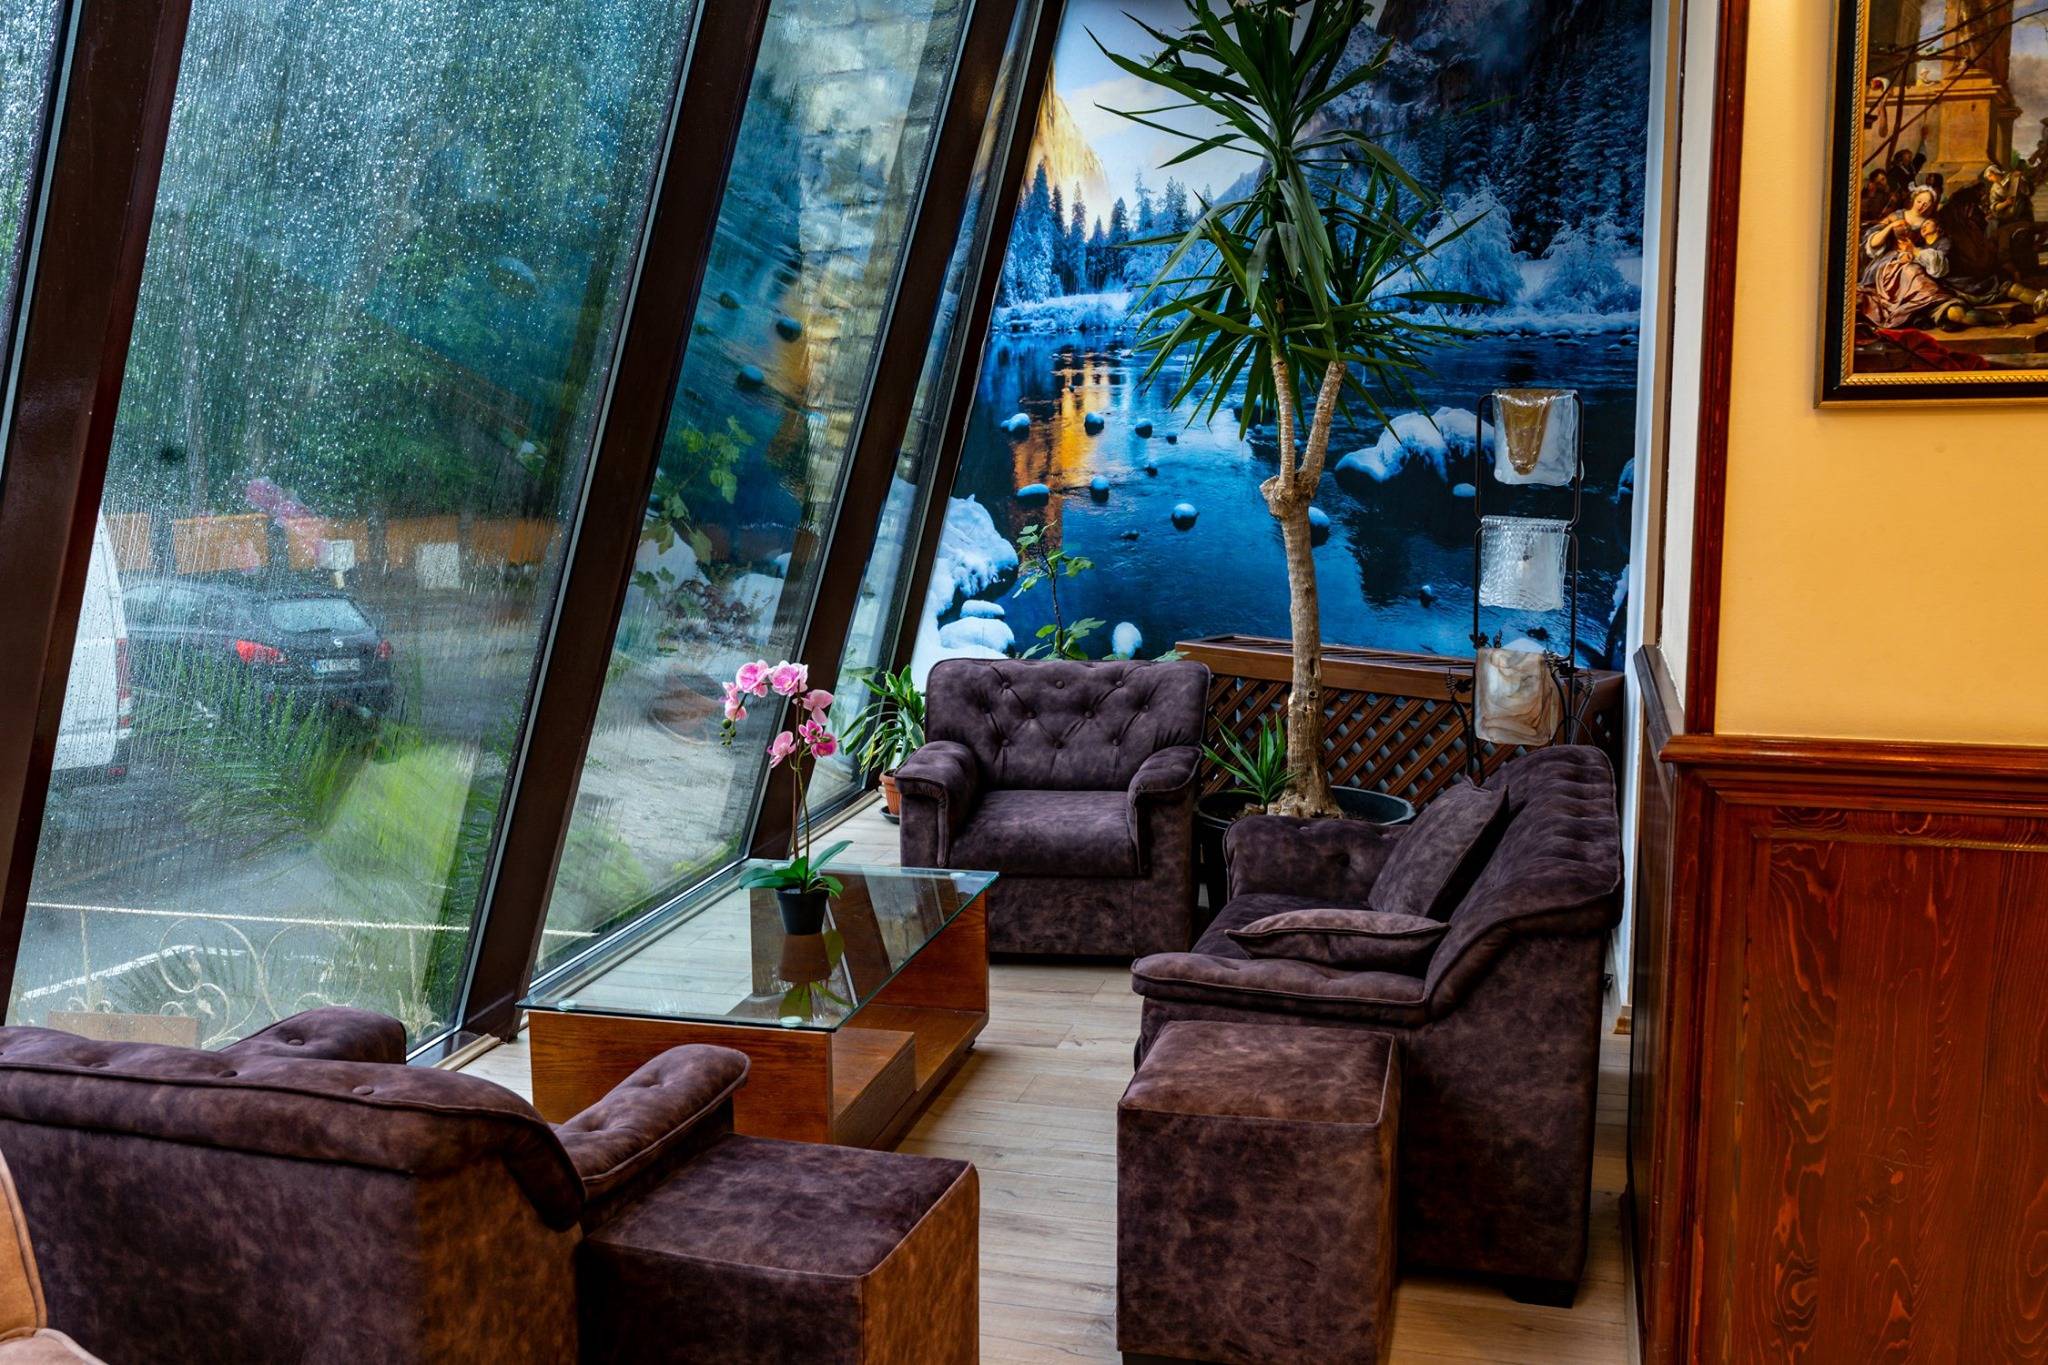 Minivacanta la Ski Predeal Hotel Belvedere